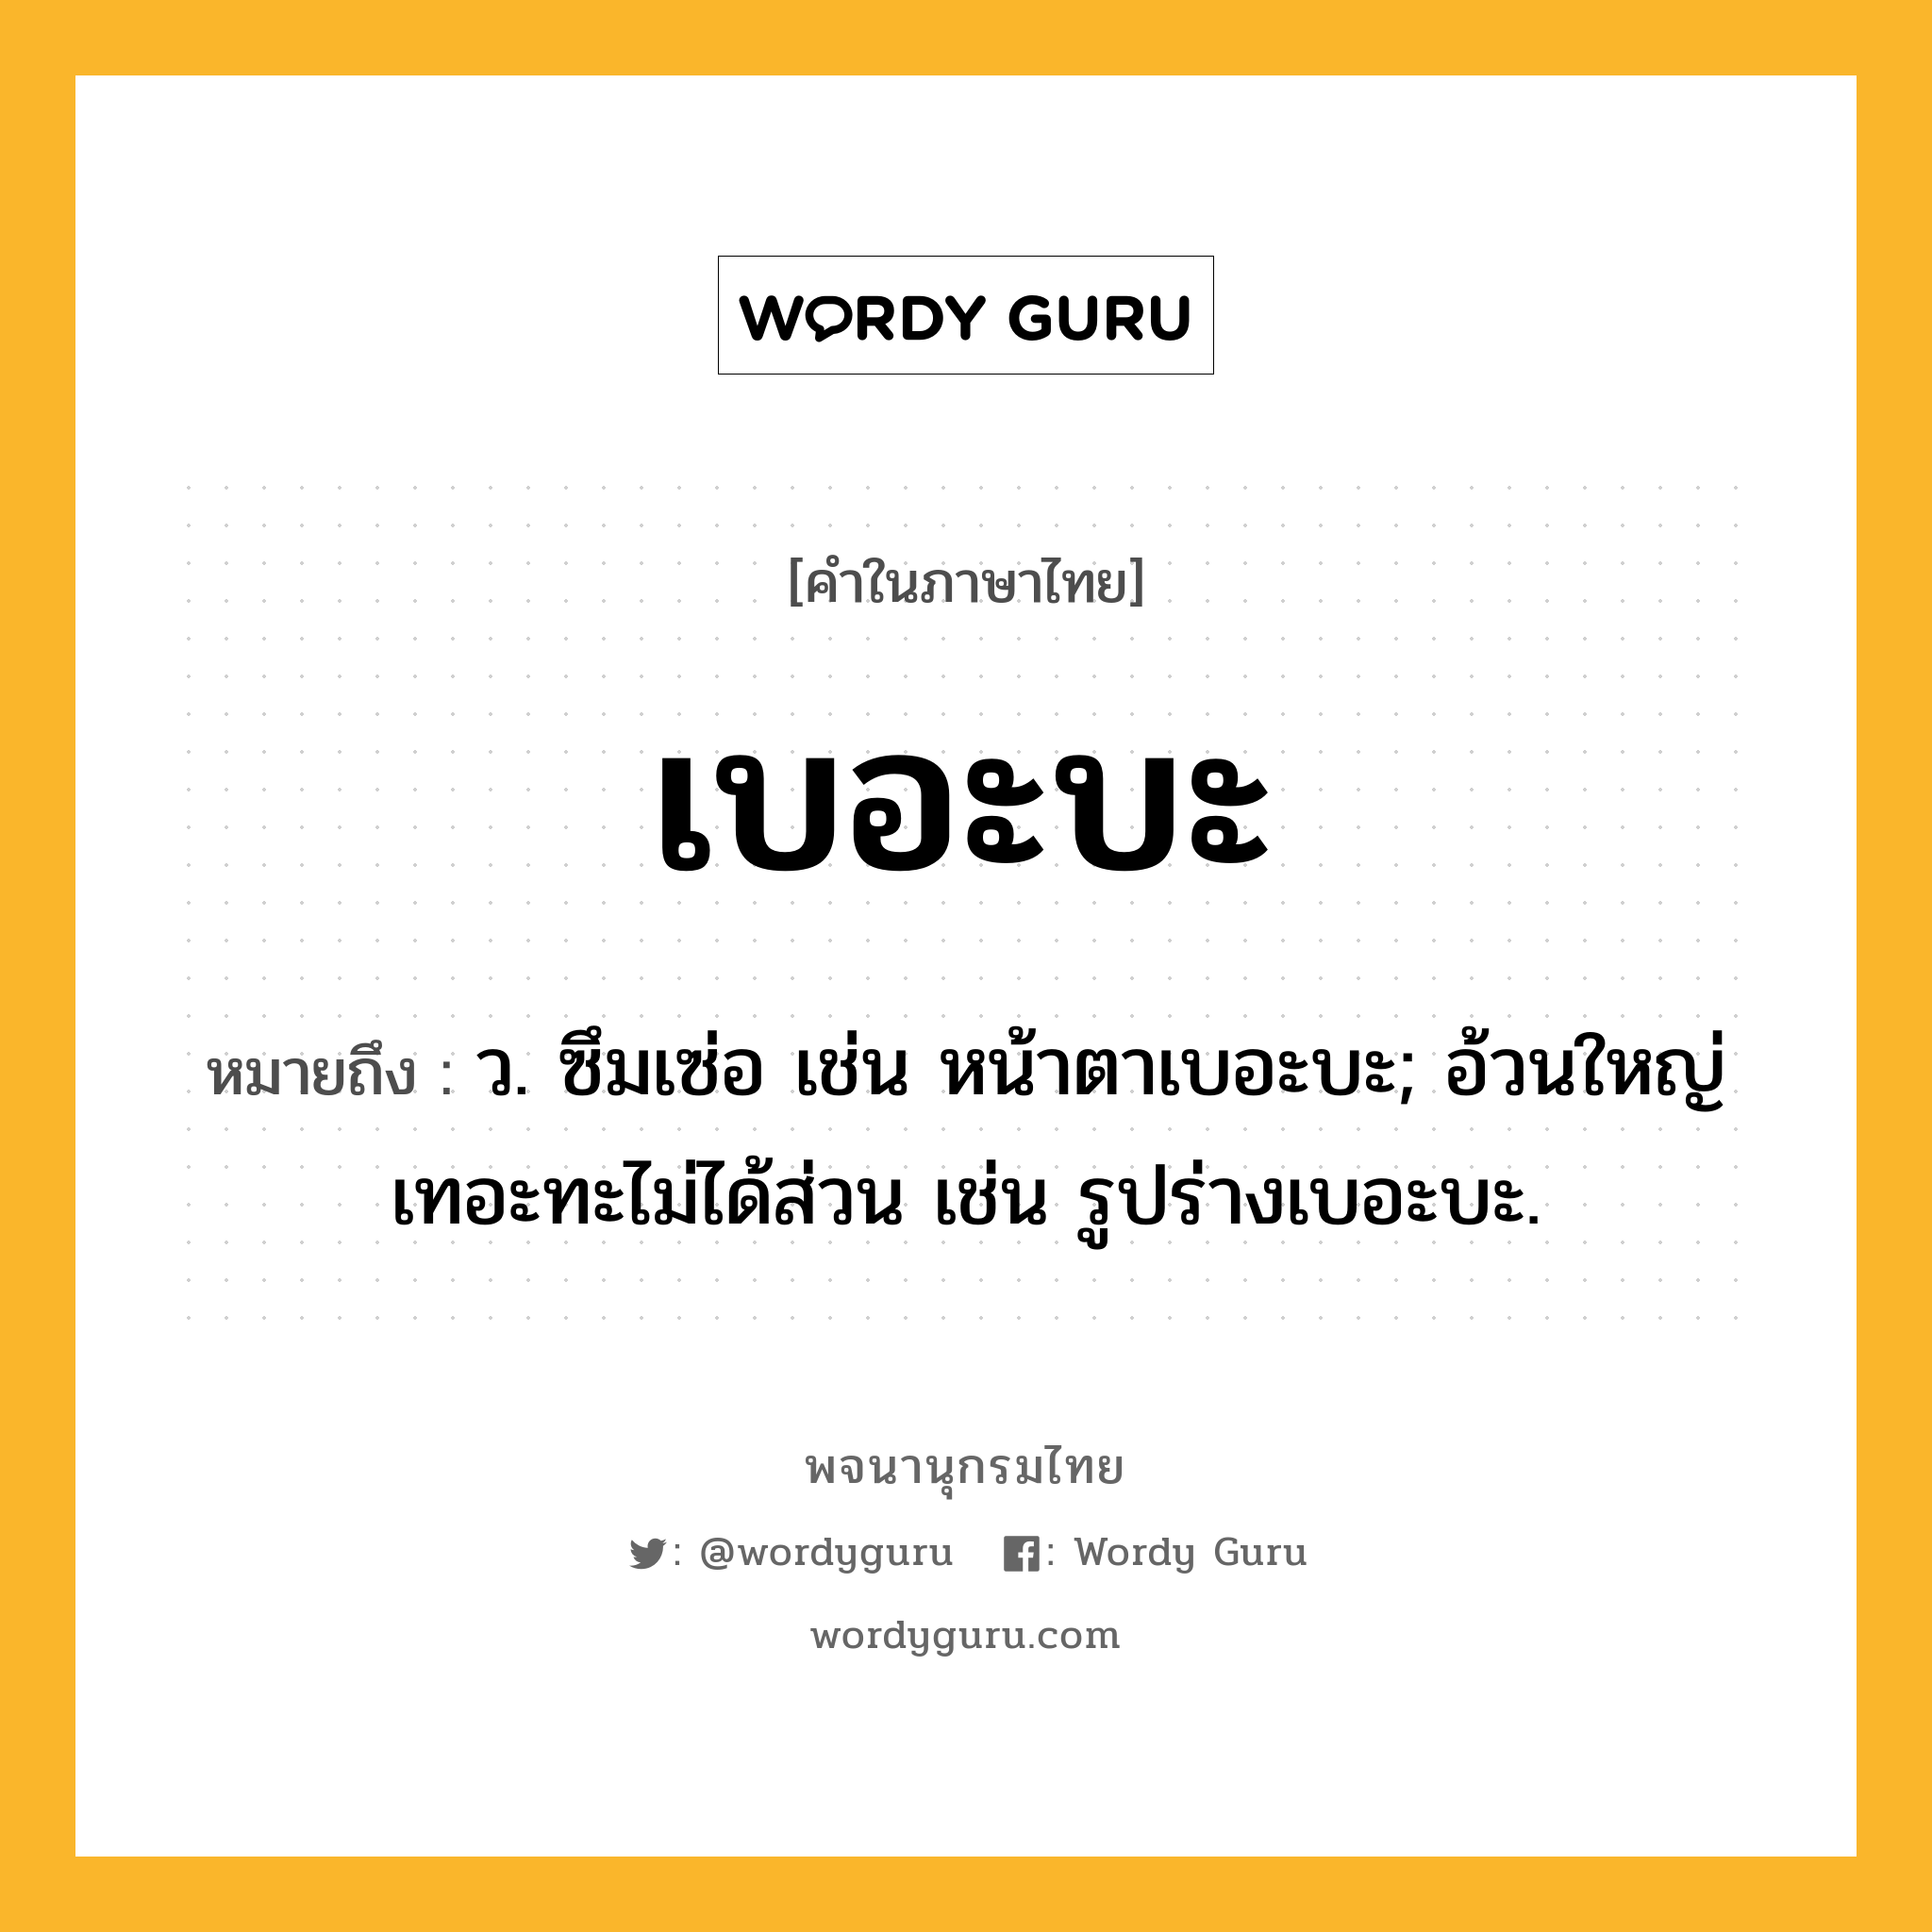 เบอะบะ หมายถึงอะไร?, คำในภาษาไทย เบอะบะ หมายถึง ว. ซึมเซ่อ เช่น หน้าตาเบอะบะ; อ้วนใหญ่เทอะทะไม่ได้ส่วน เช่น รูปร่างเบอะบะ.